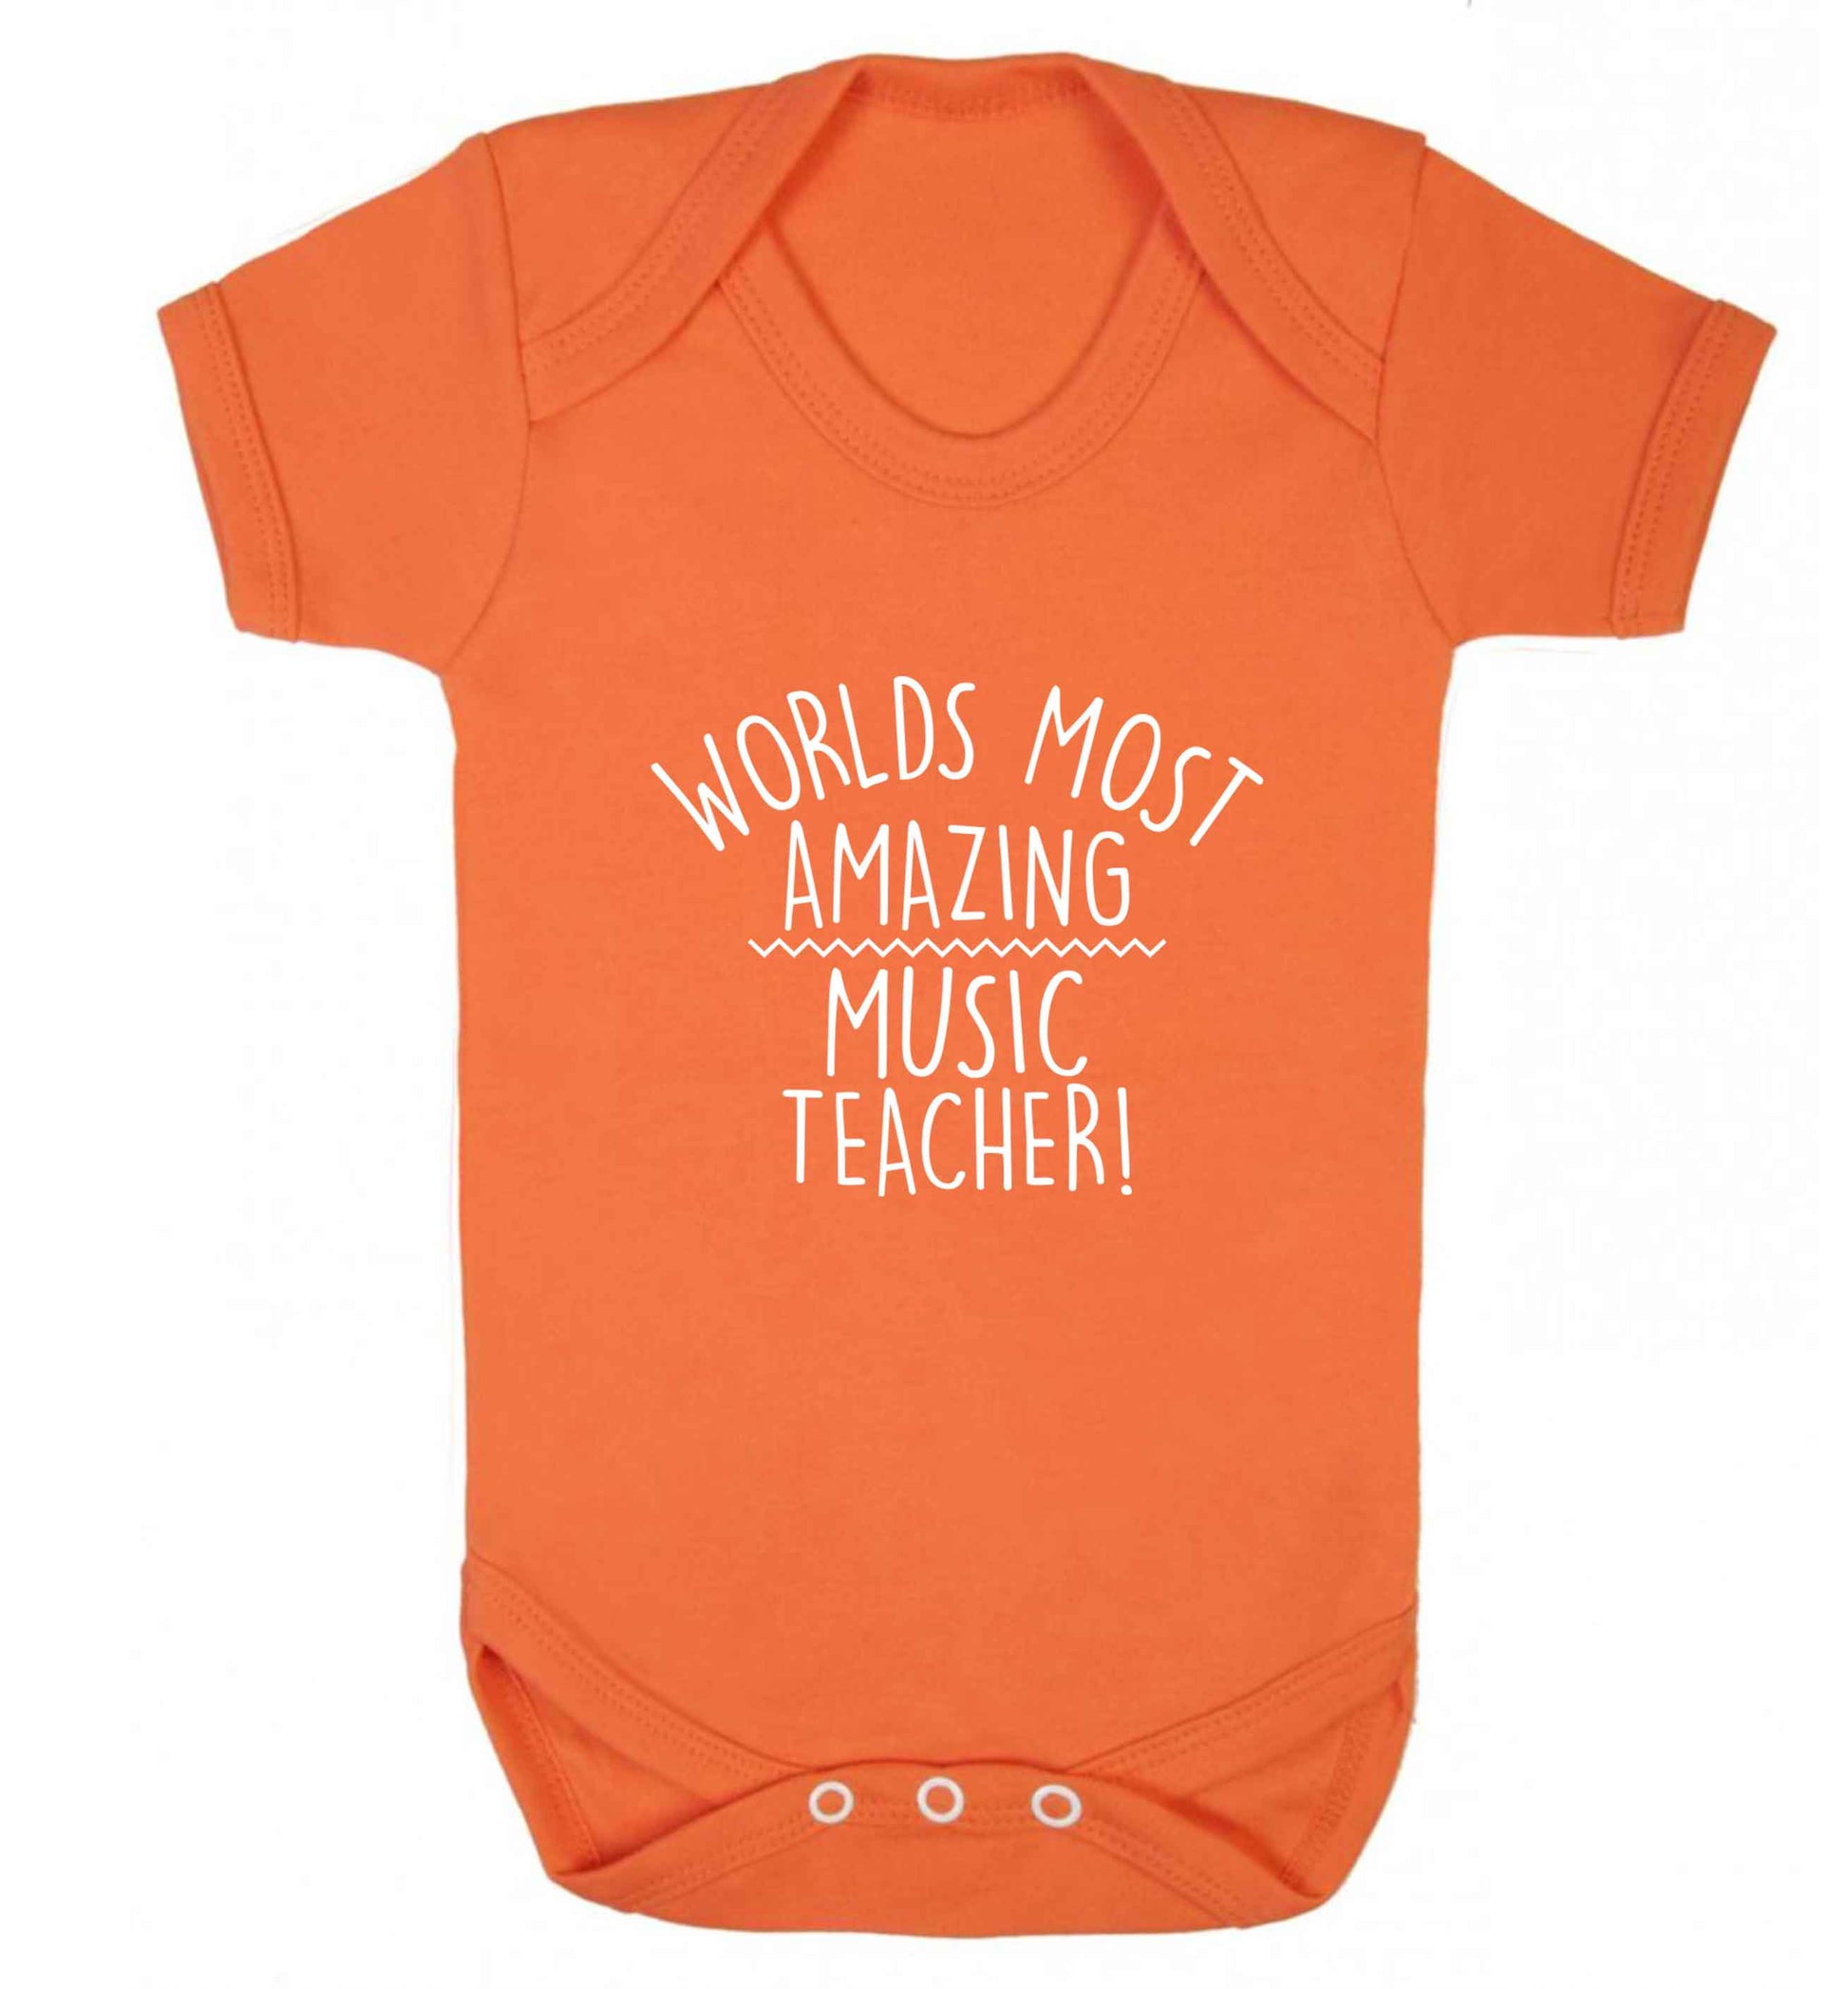 Worlds most amazing music teacher baby vest orange 18-24 months